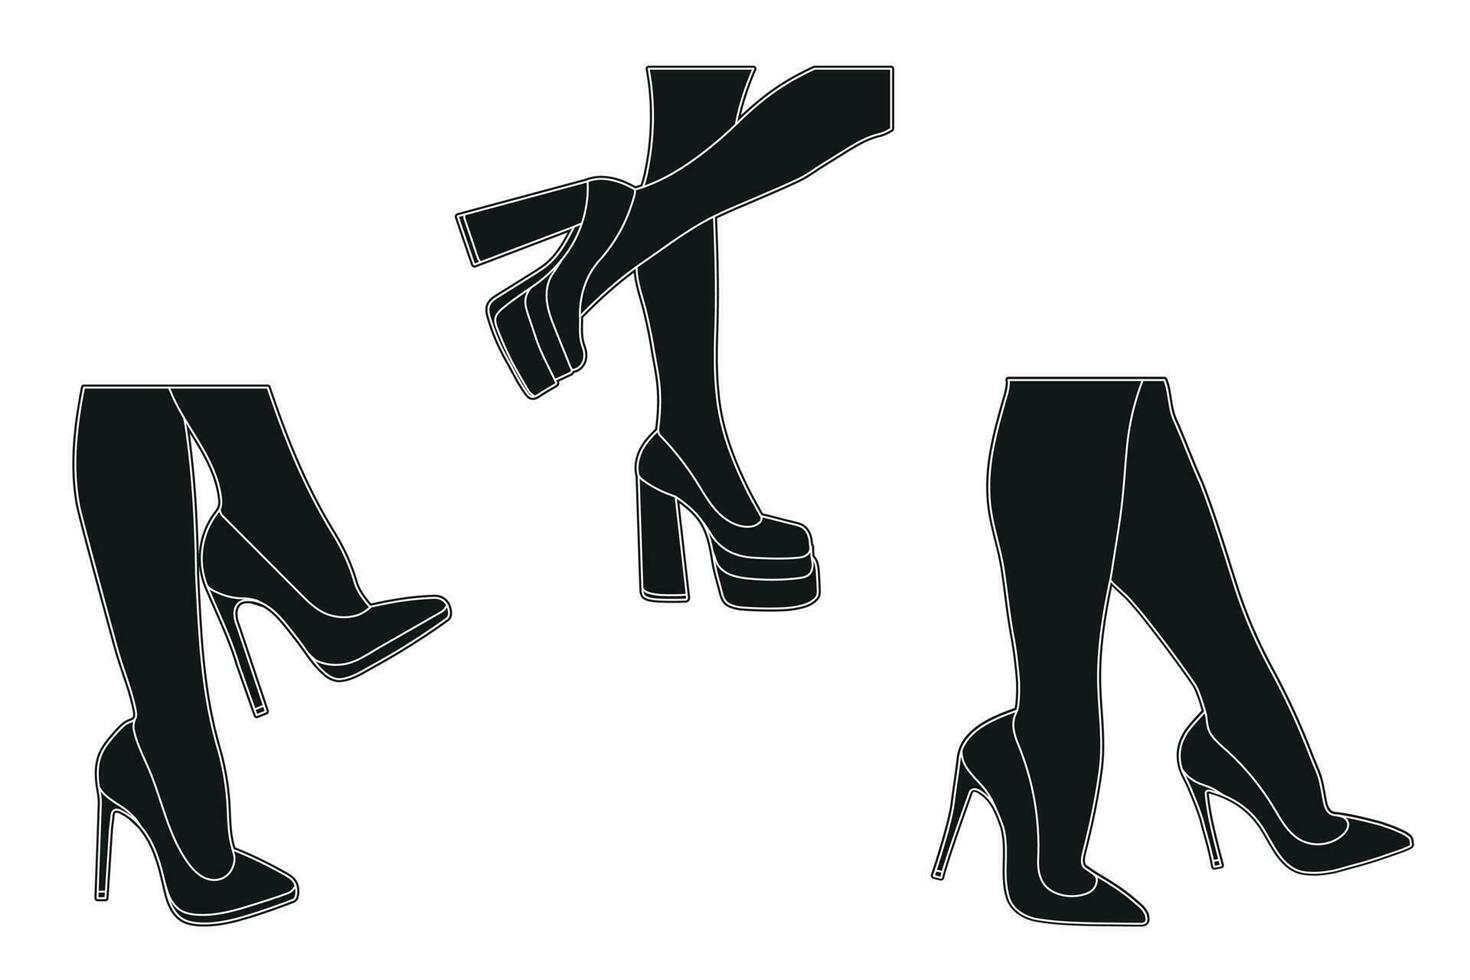 linha arte silhueta esboço do fêmea pernas dentro uma pose. sapatos estiletes, Alto salto. andando, de pé, correndo, pulando, dança vetor